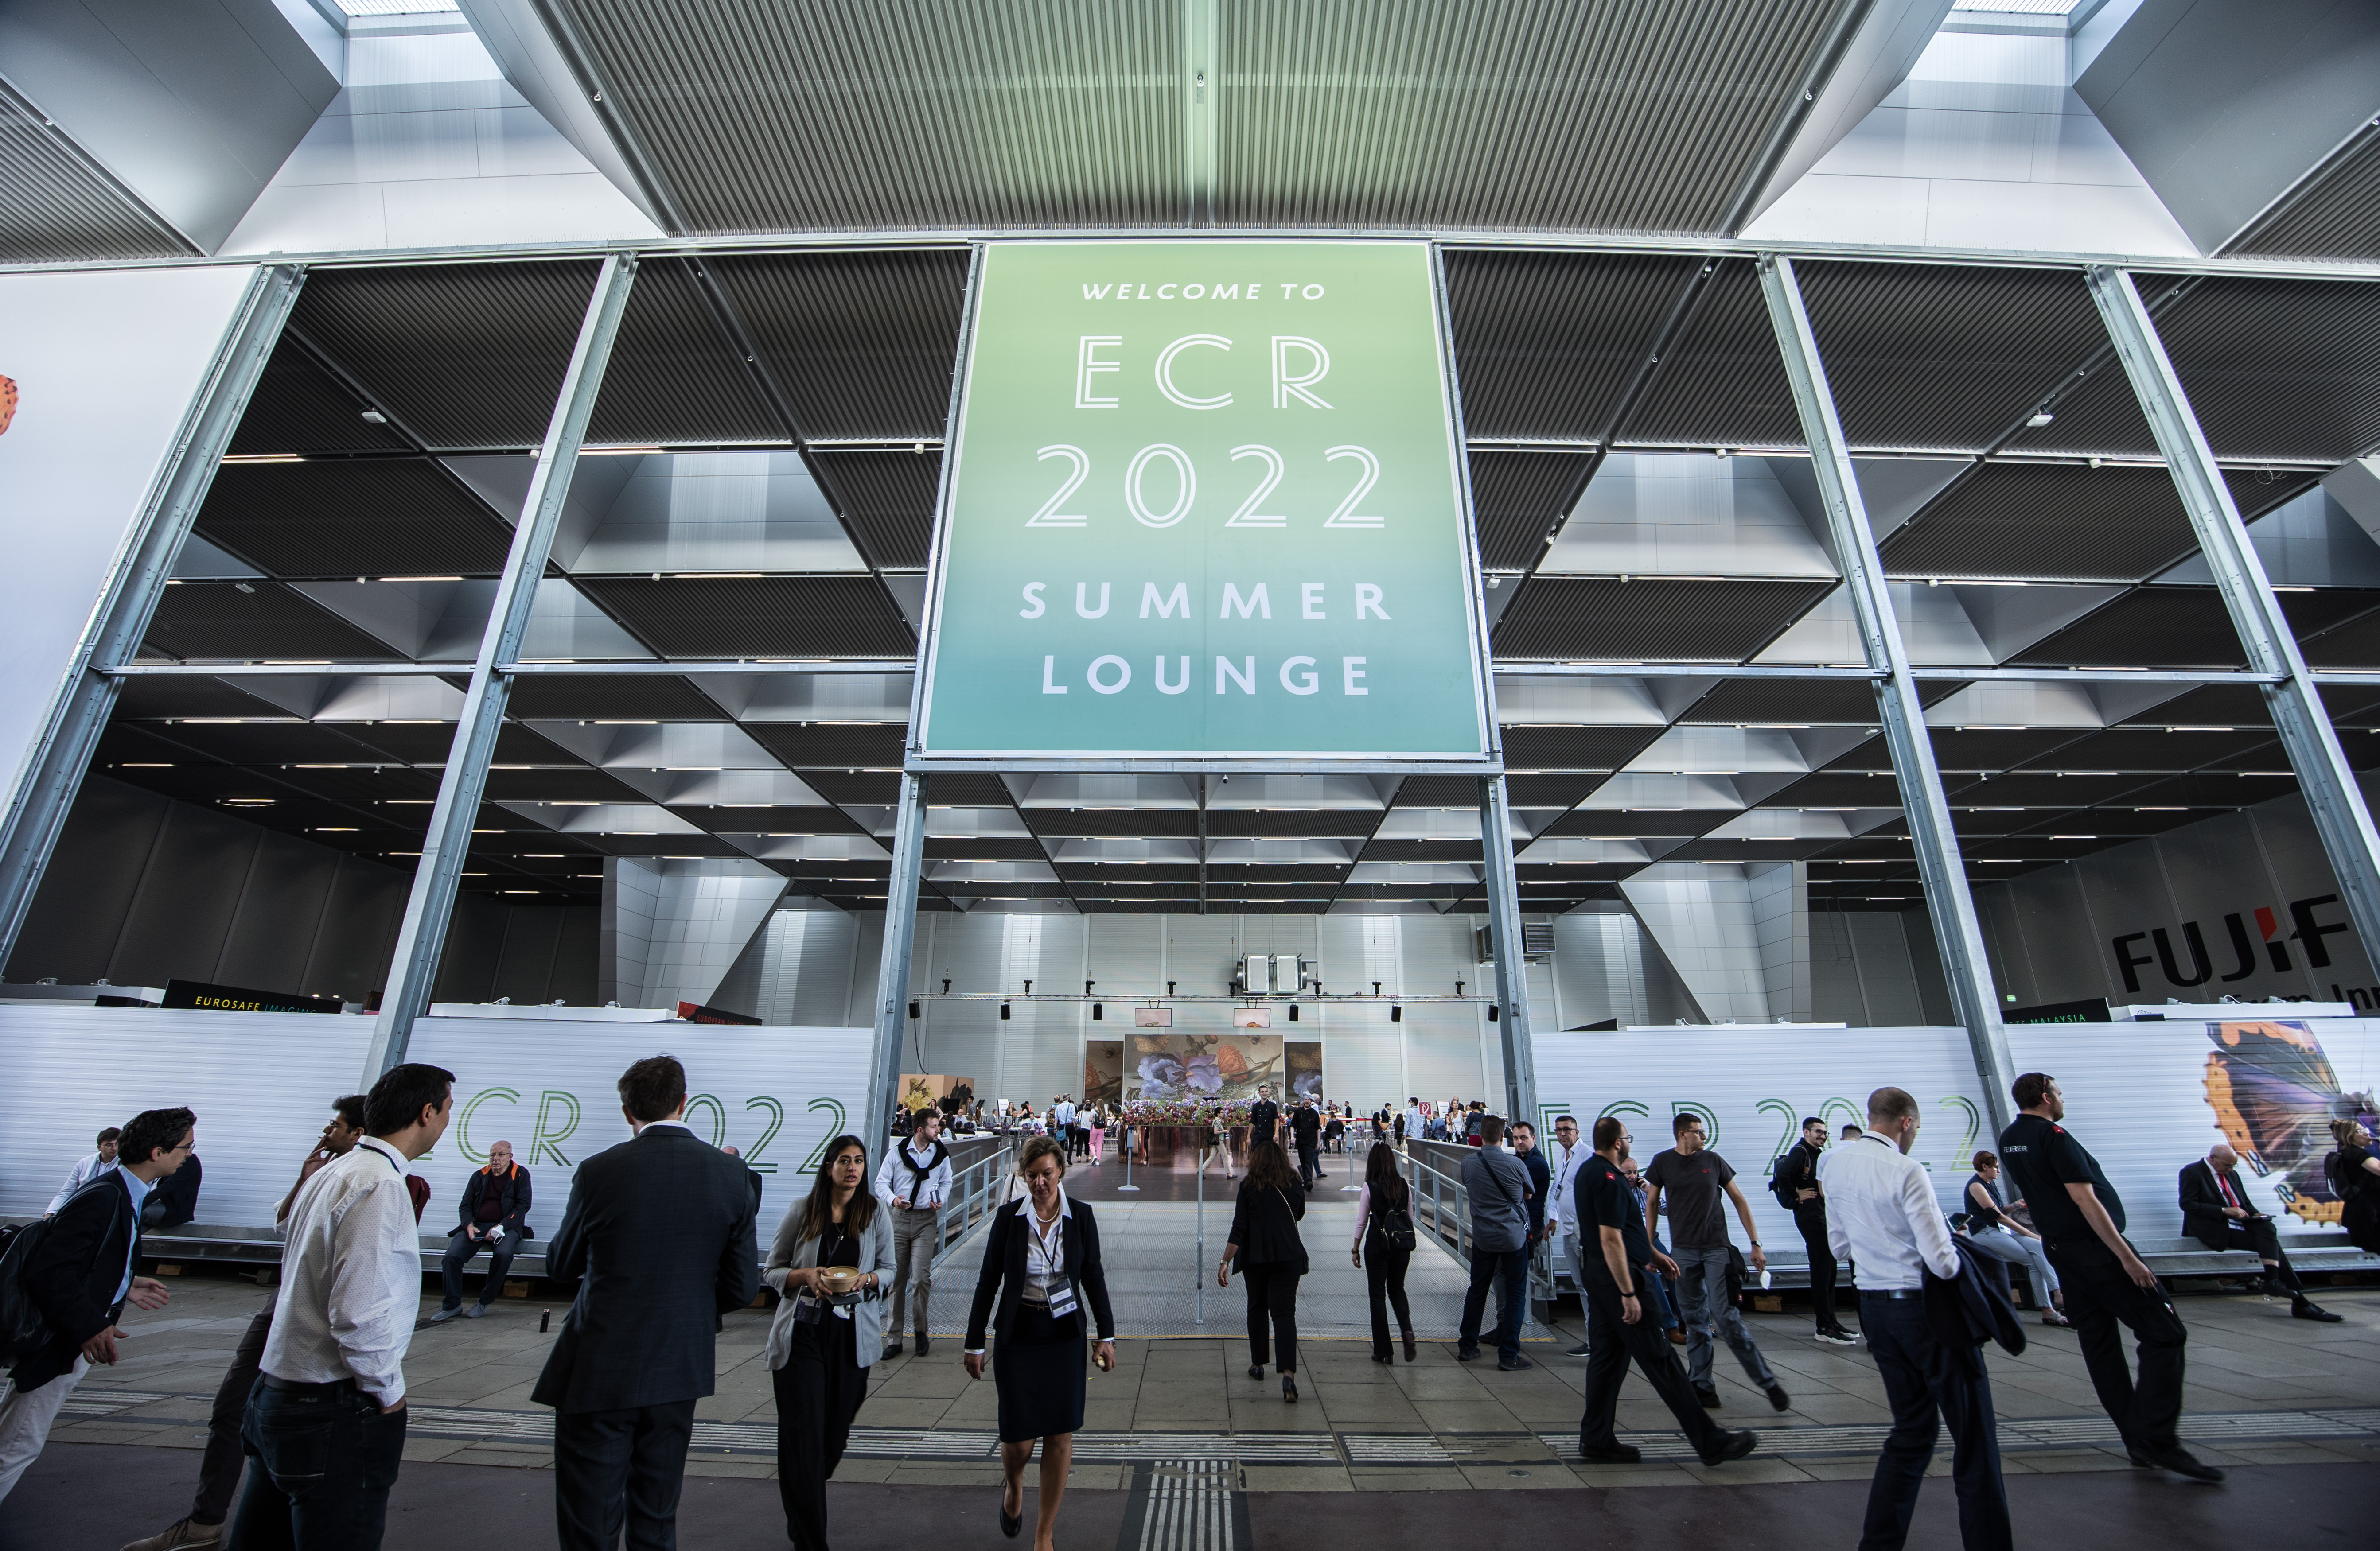 Foto: Eingang einer Halle mit Plakat ECR 2022 und vielen Menschen